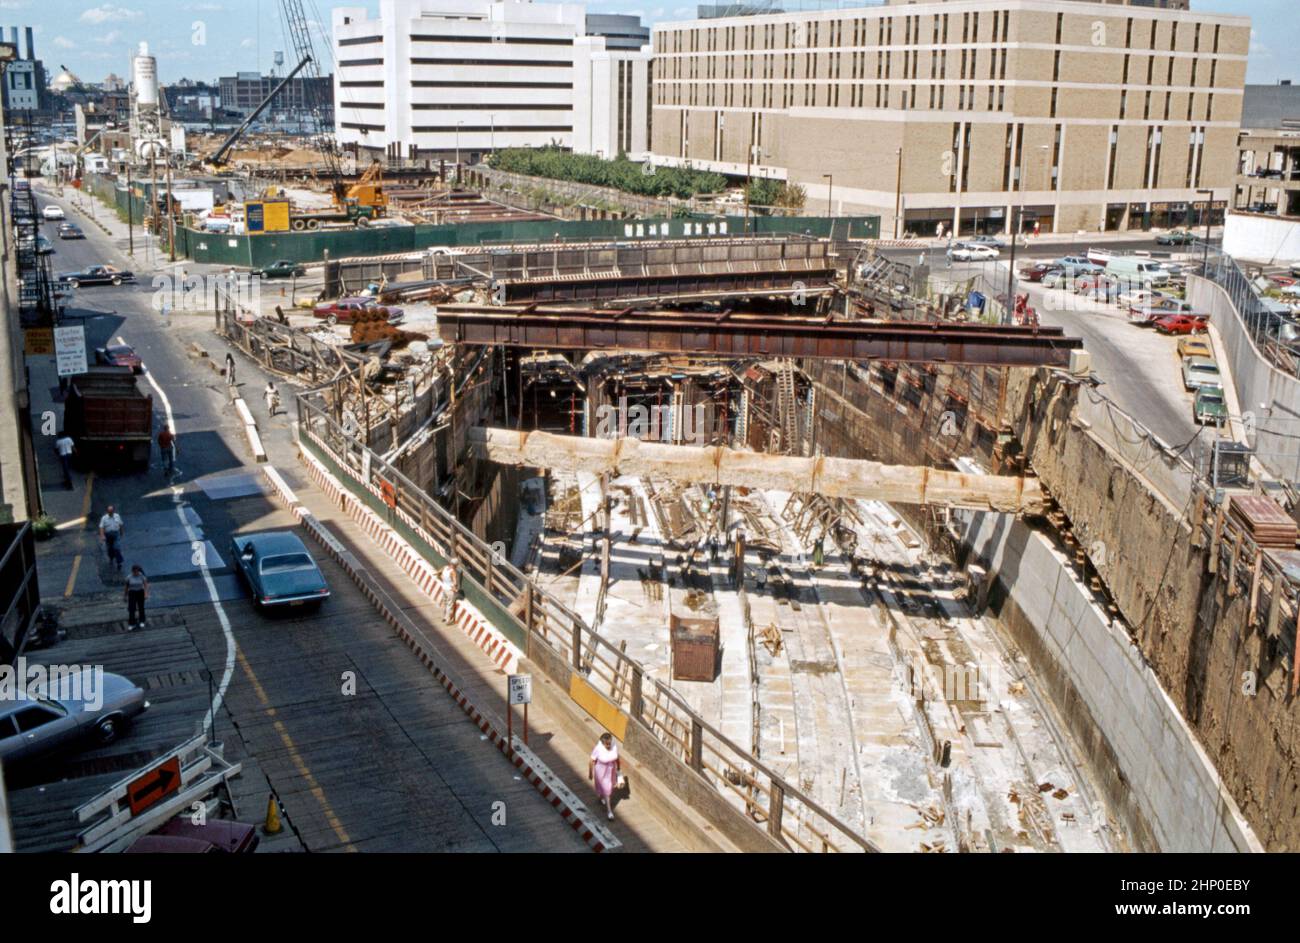 Se están realizando trabajos bajo tierra en julio de 1980 en la Conexión de Commuter Center City de Filadelfia (CCCC o “el túnel de transporte”), una conexión de tren en Center City, Filadelfia, Pensilvania, EE.UU. Se construyó, principalmente como un proyecto de «corte y cobertura», para conectar los extremos de los dos sistemas de ferrocarril de cercanías. Ahora la mayoría de las líneas ferroviarias regionales DE SEPTA pasan a través del túnel de cuatro vías. Las obras comenzaron en 1978. El CCCC abrió sus puertas en 1984. El trabajo implicó apuntalar la histórica terminal de lectura y mantener los servicios públicos intactos durante la construcción (como se muestra aquí) – una fotografía vintage de 1980s. Foto de stock